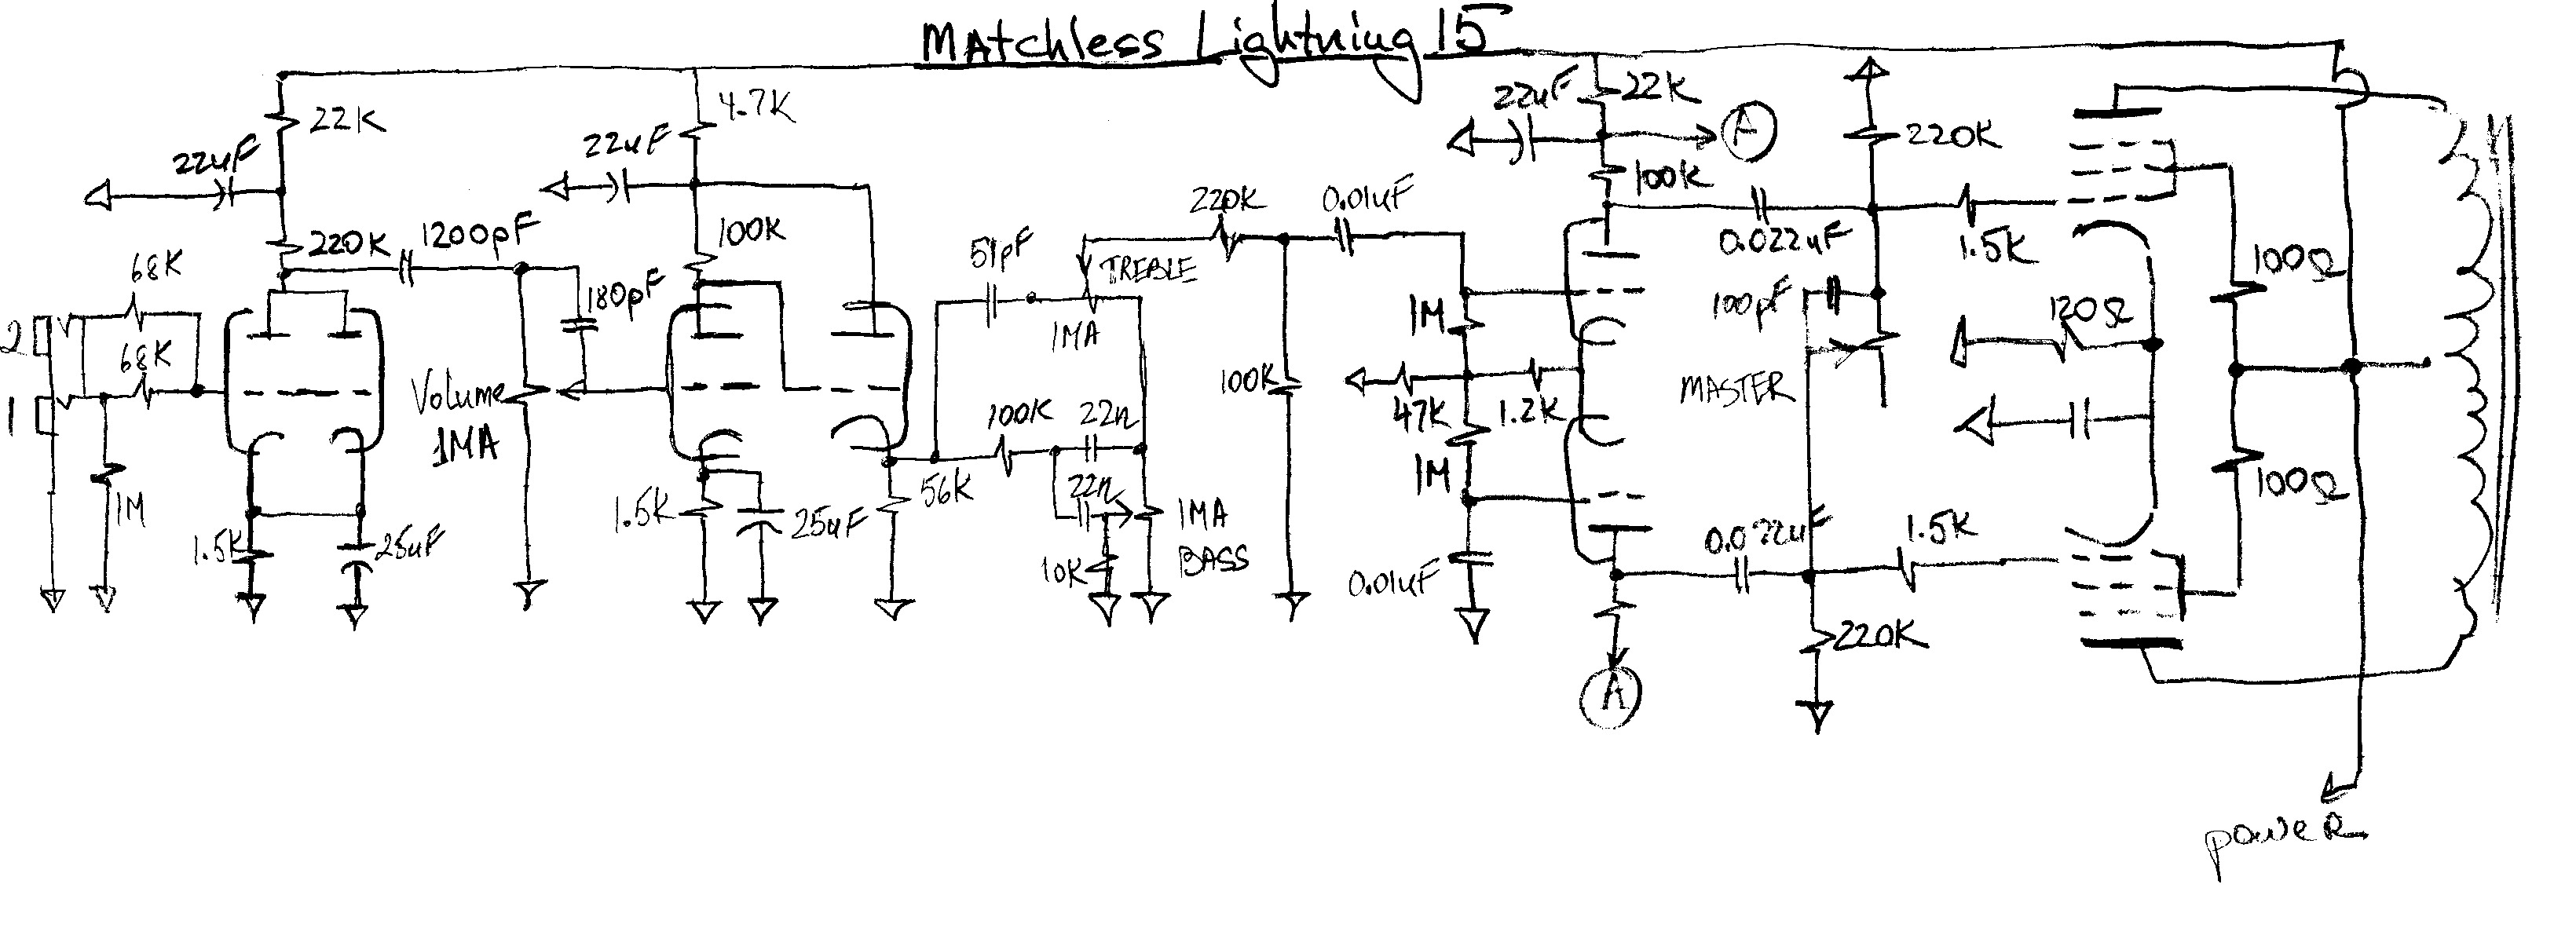 matchless lightning15 pdf matchless lightning15 pdf